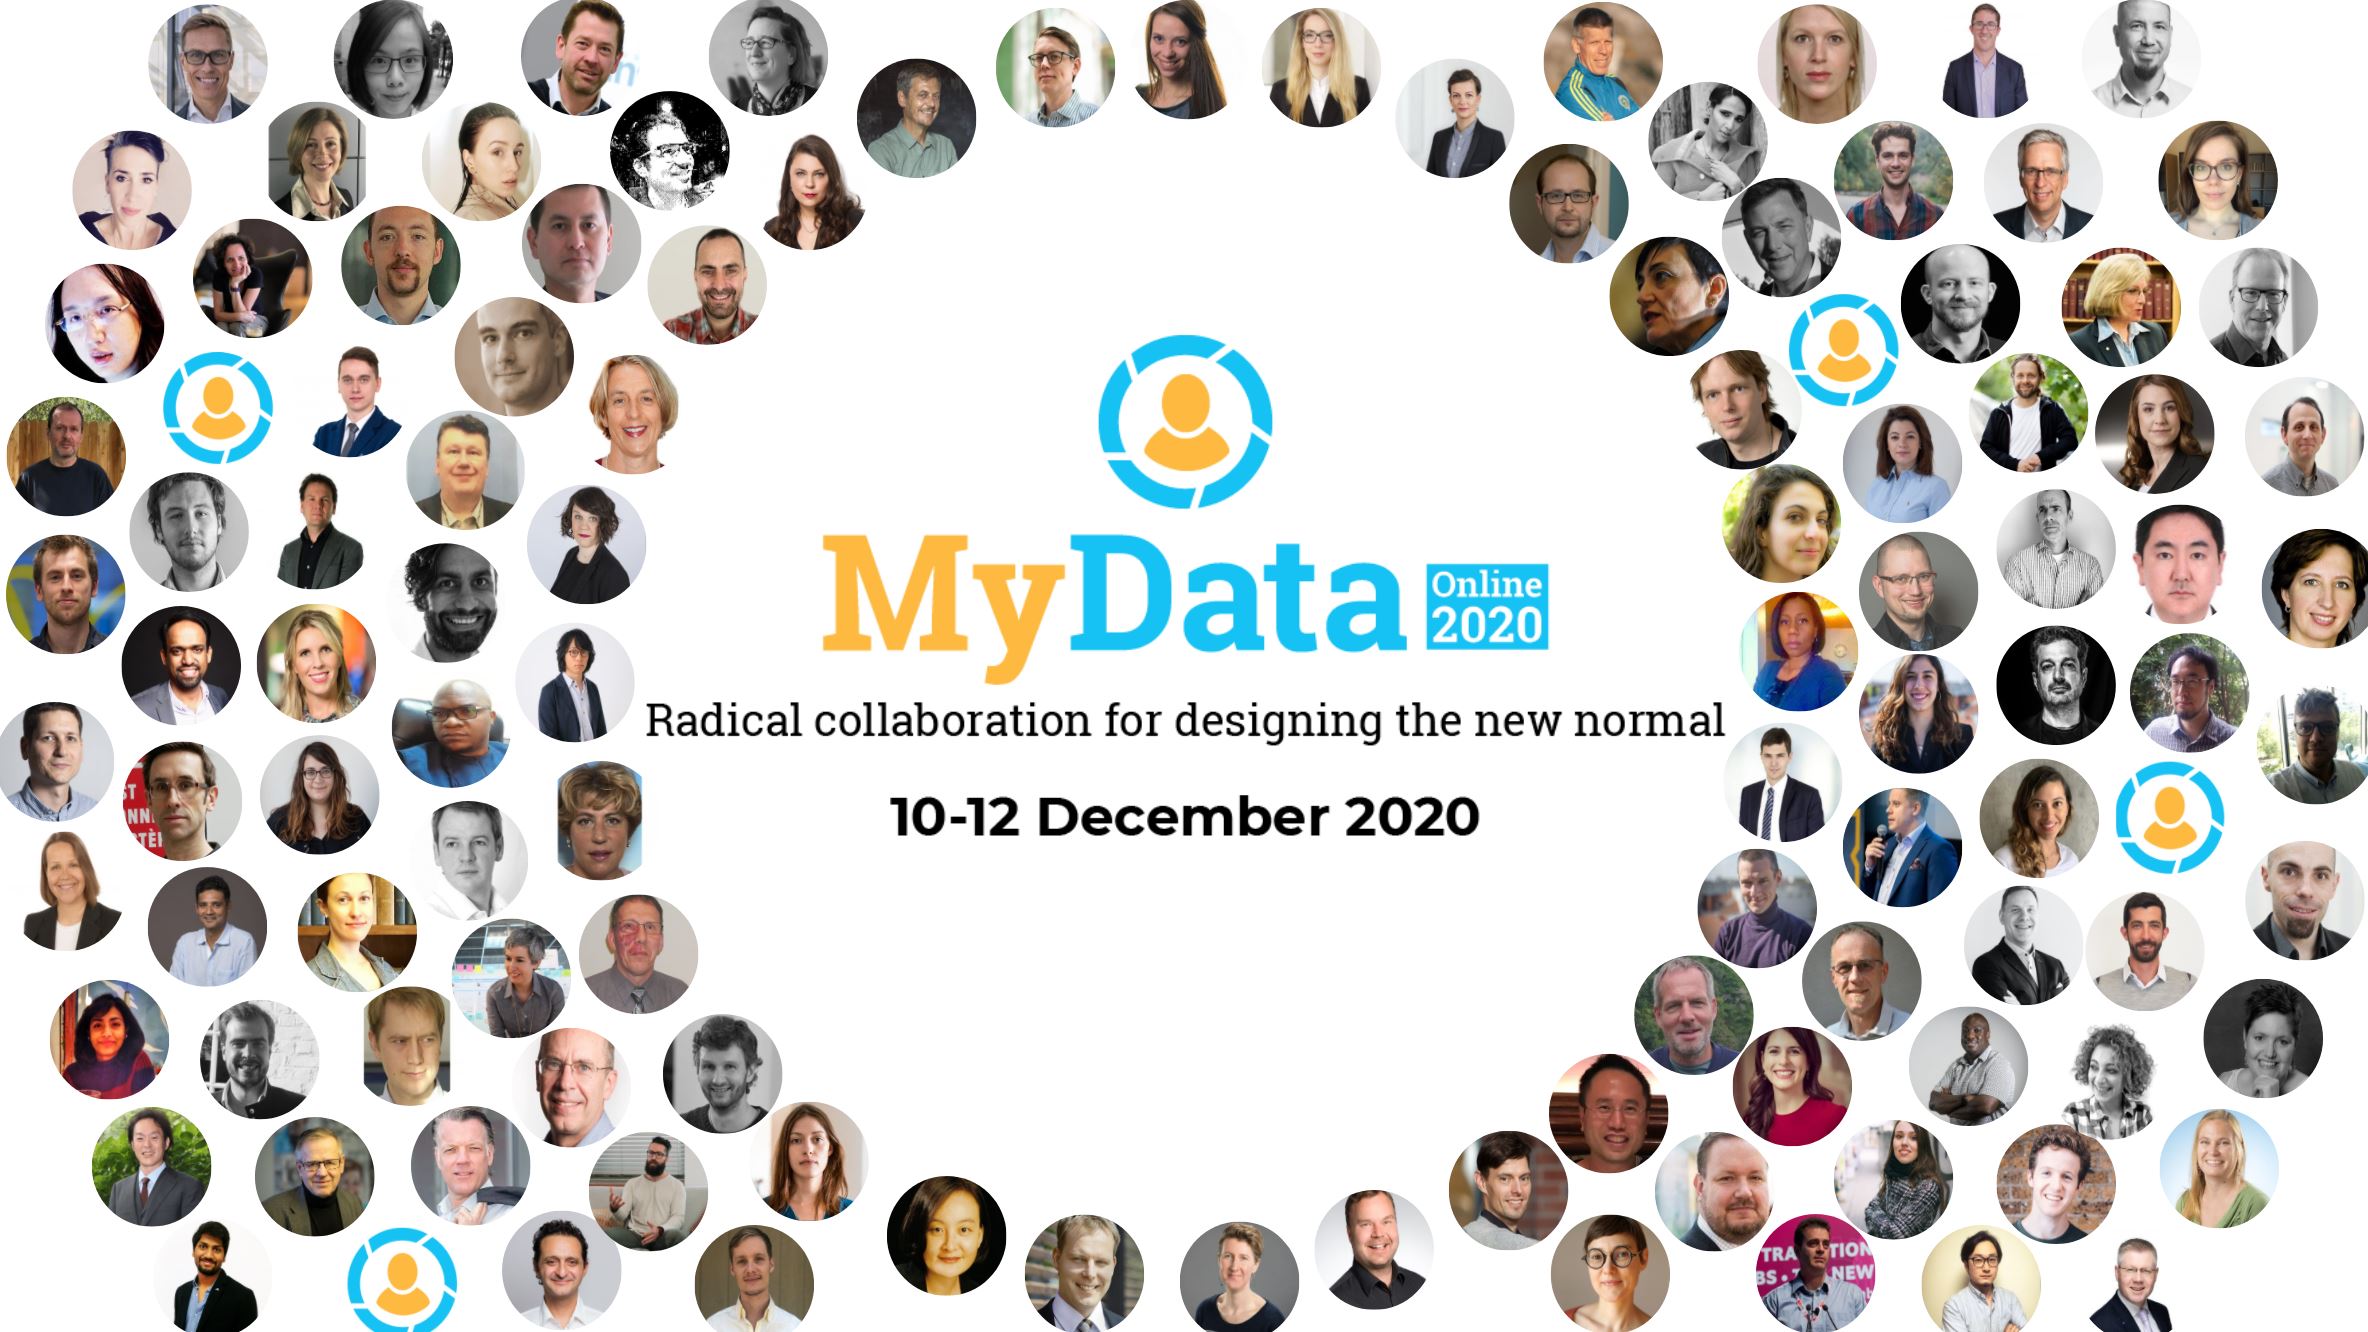 MyData Online 2020